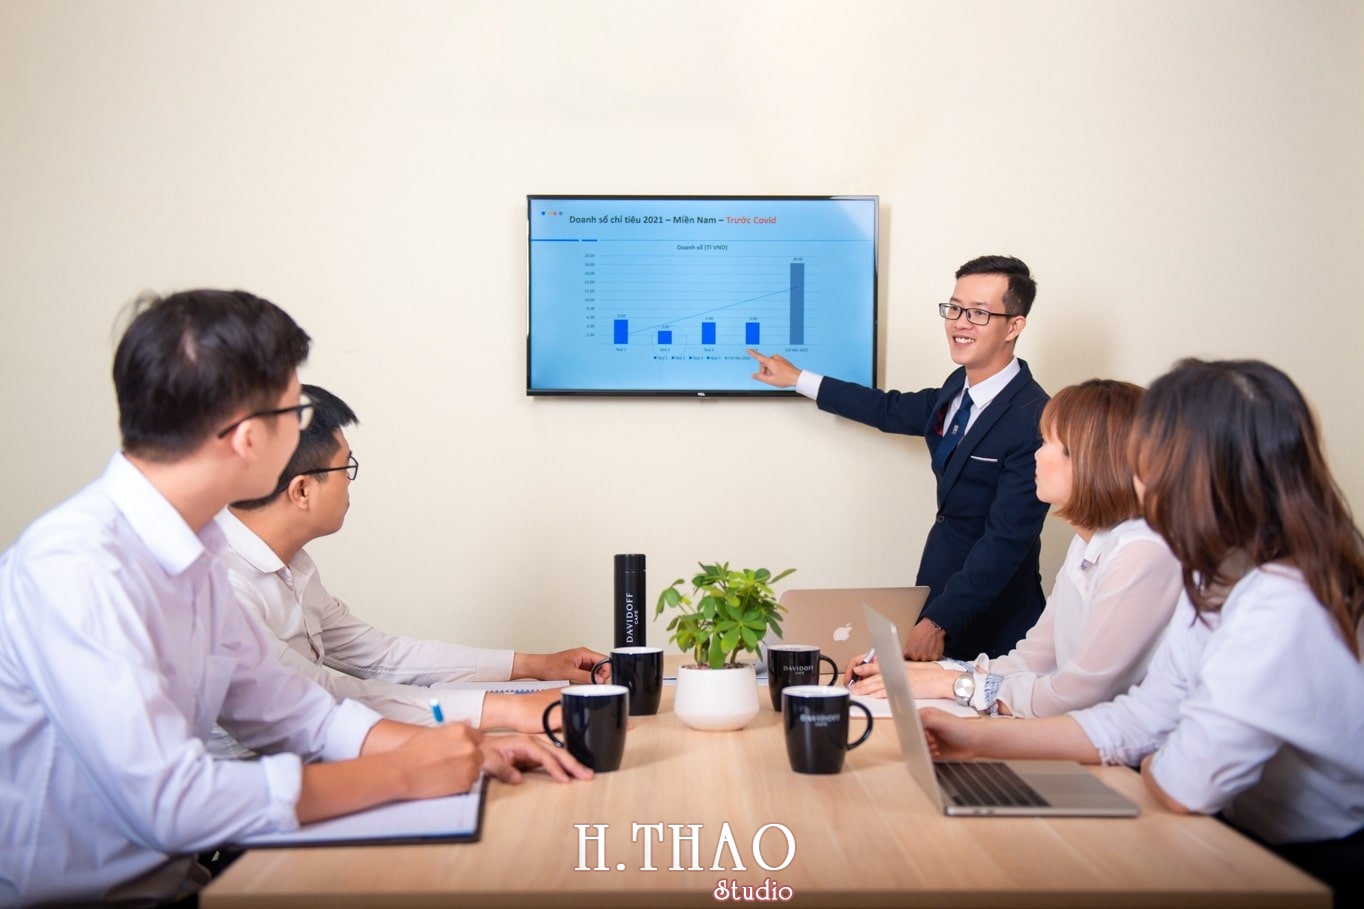 anh cong ty 3 min - Dịch vụ chụp ảnh văn phòng công ty chuyên nghiệp tại Tp.HCM – HThao Studio